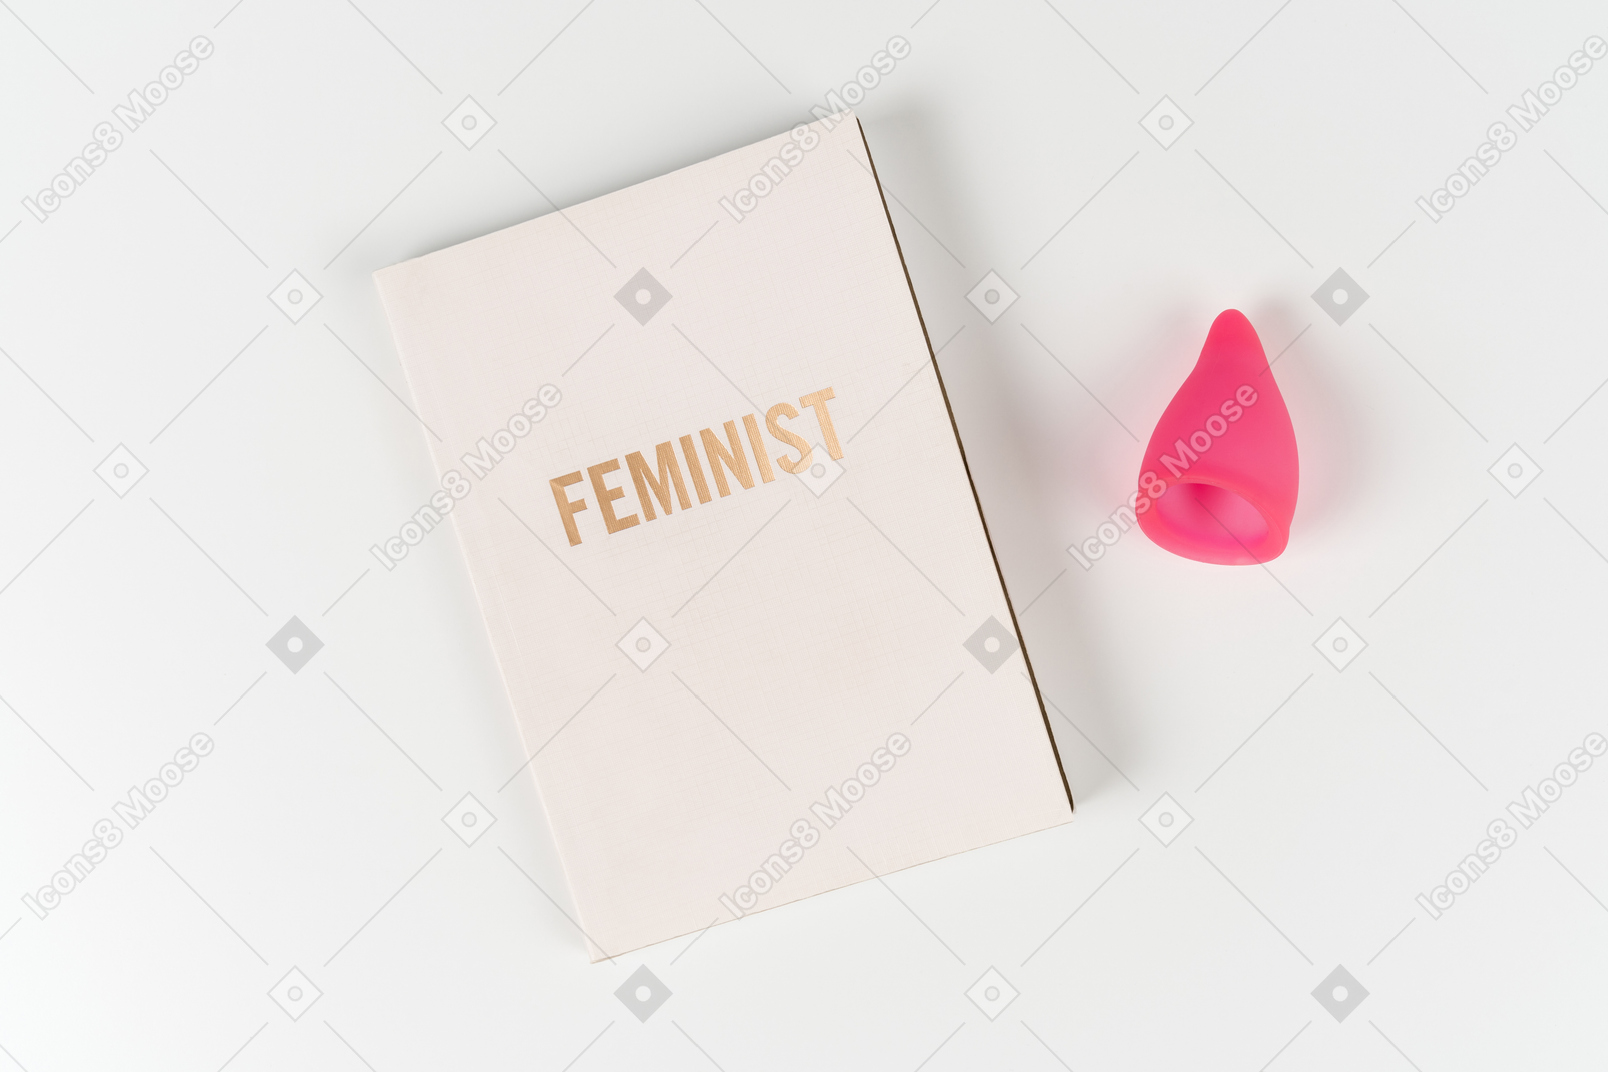 Libro feminista y copa menstrual sobre fondo blanco.